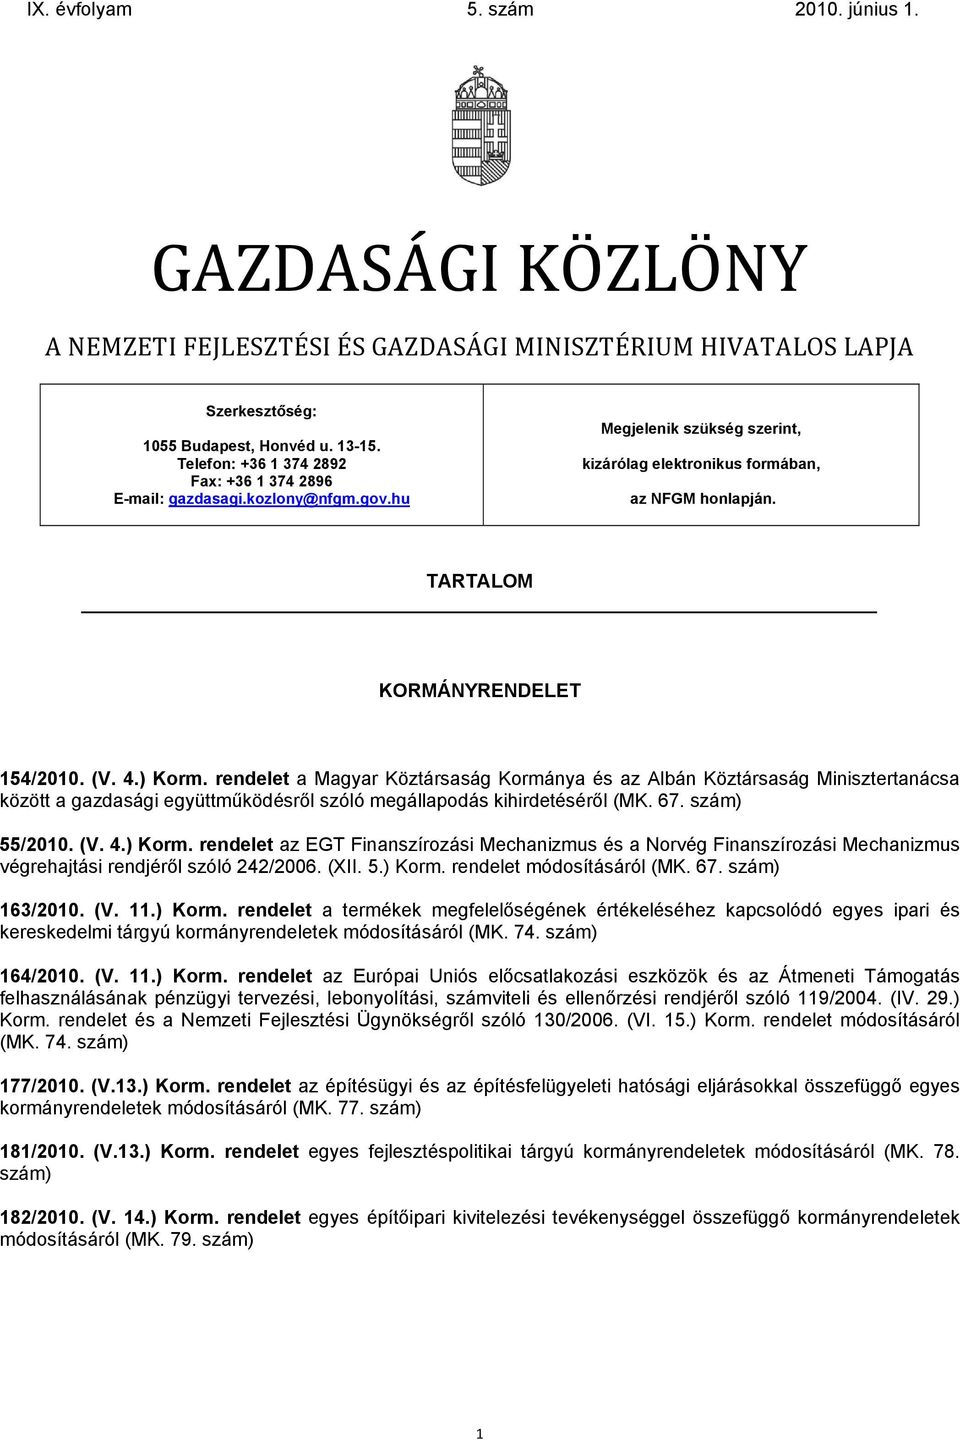 rendelet a Magyar Köztársaság Kormánya és az Albán Köztársaság Minisztertanácsa között a gazdasági együttműködésről szóló megállapodás kihirdetéséről (MK. 67. szám) 55/2010. (V. 4.) Korm.